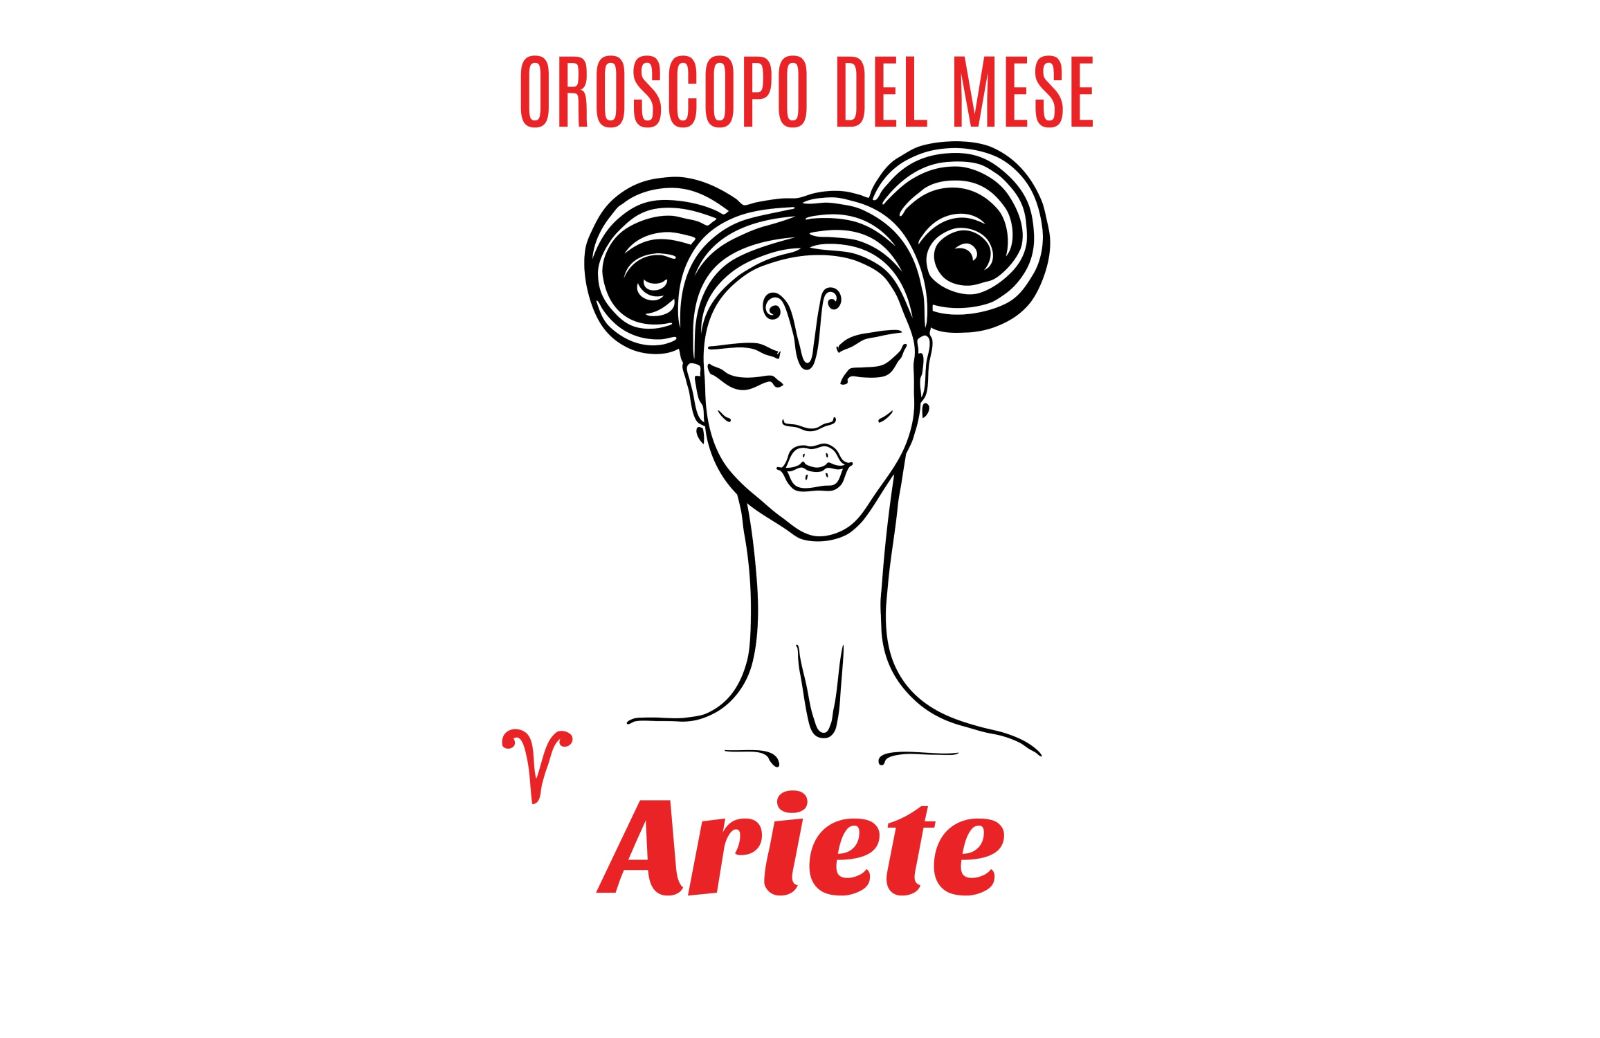 Oroscopo del mese- Ariete: dicembre 2019